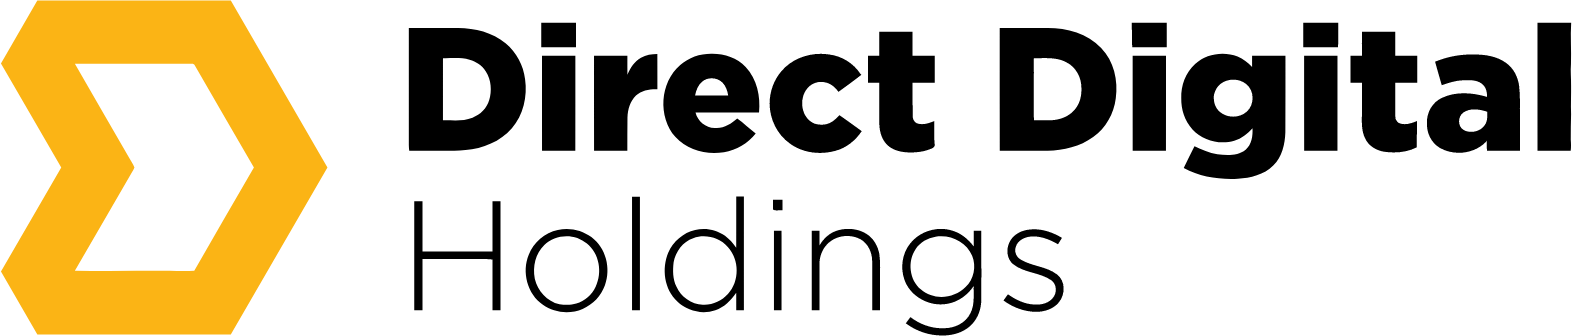 Direct Digital Holdings logo large (transparent PNG)